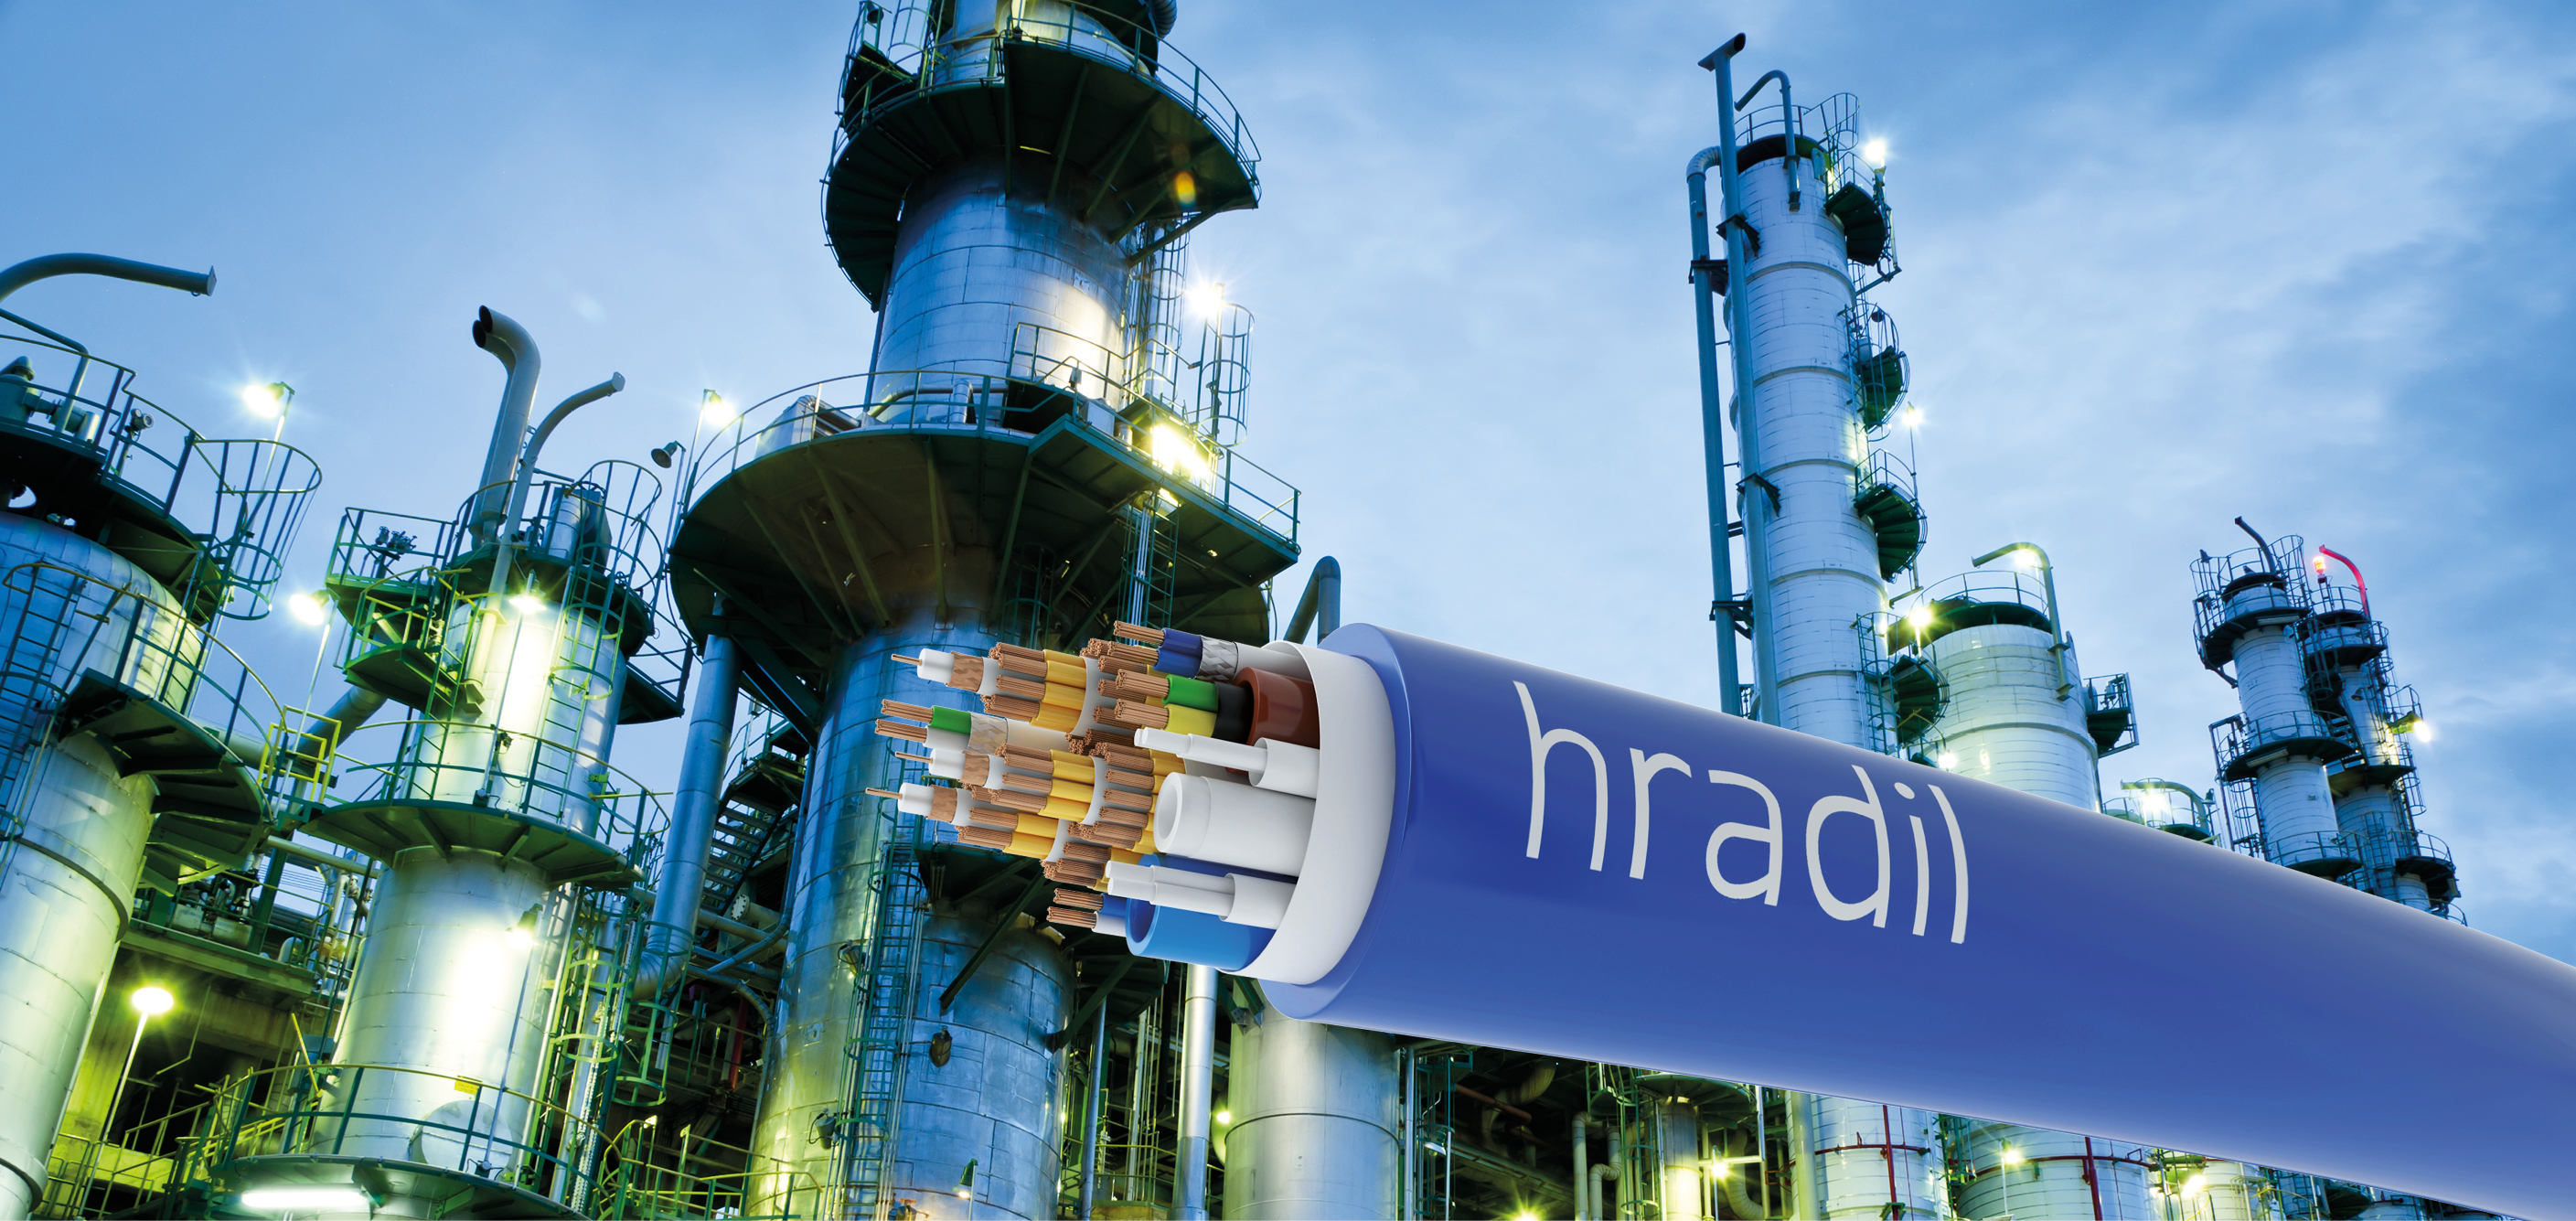 HRADIL Spezialkabel stellt eine trommelbare Hybridleitung für die Stromversorgung inklusive Cat7-Ethernet, LWL, CAN-Bus sowie Pneumatik- und Hydraulik- Schläuchen vor. 